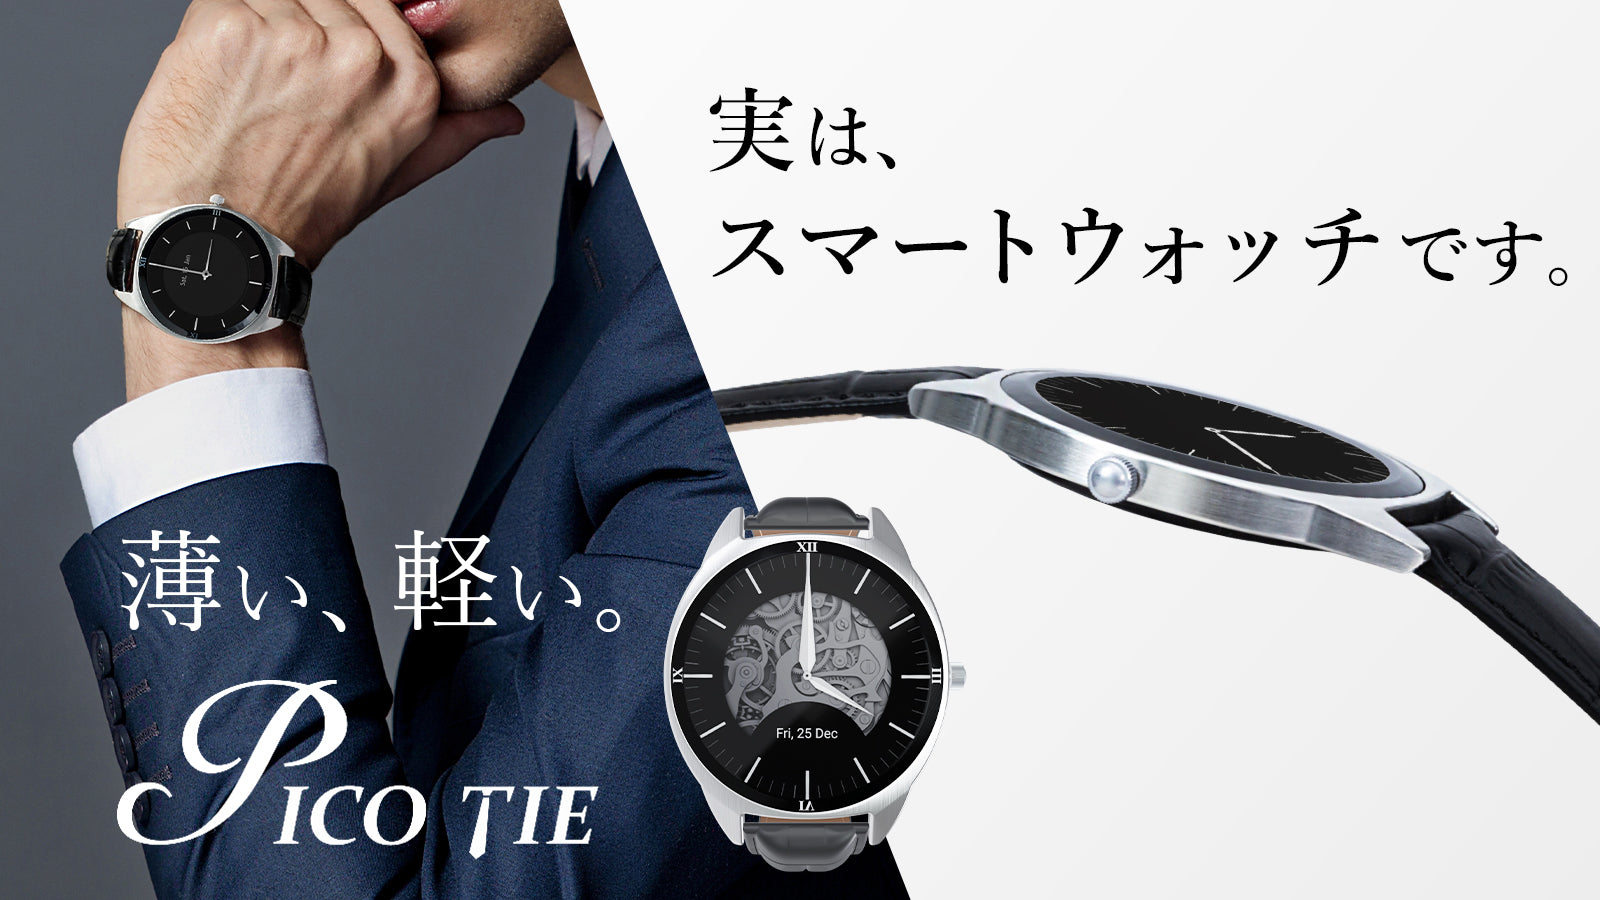 低価日本製スマートウォッチ Pico Tie 時計